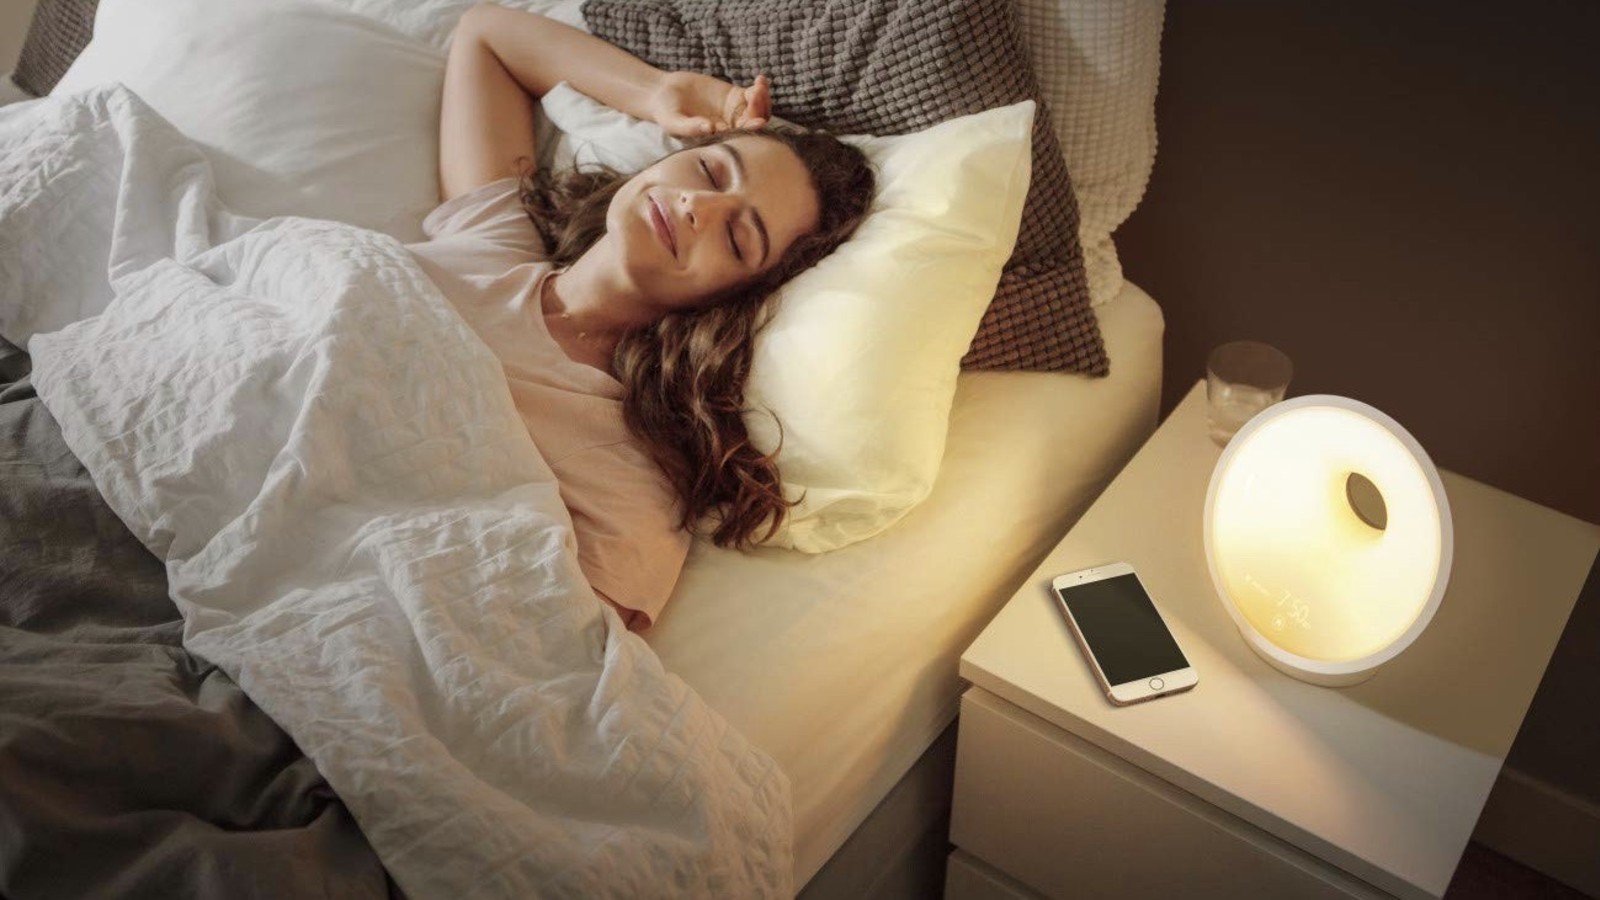 Philips SmartSleep connected wake-up light